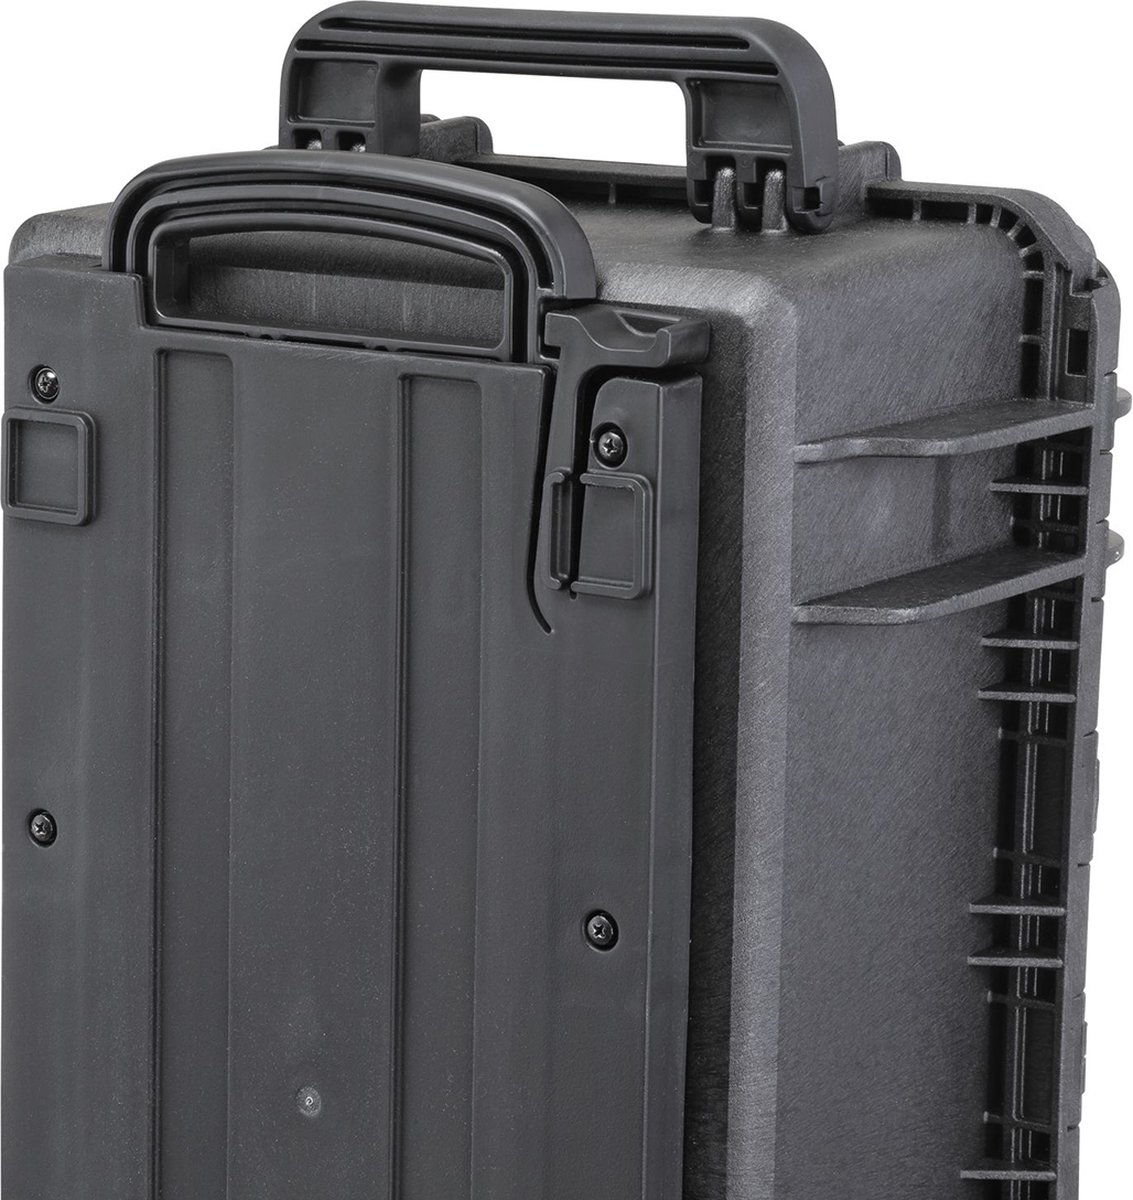 Gaffergear camera koffer 052 zwart trolley uitvoering - 36,100000 x 23,800000 x 23,800000 cm (BxDxH)